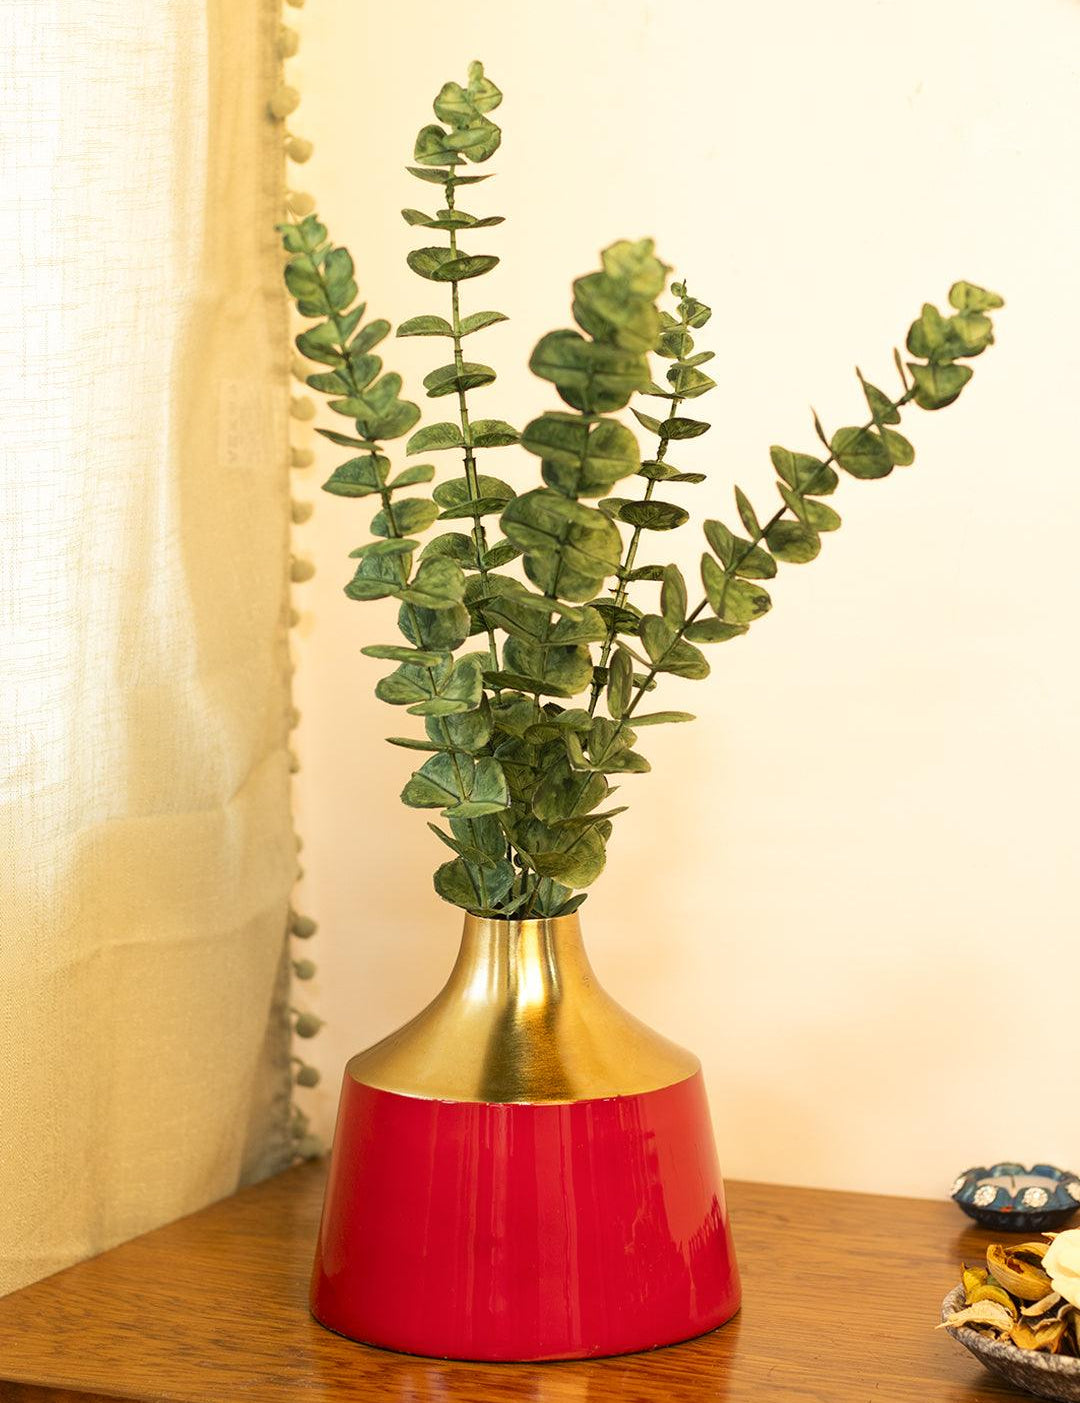 Decorative Enamel Vase - Golden & Red - MARKET 99